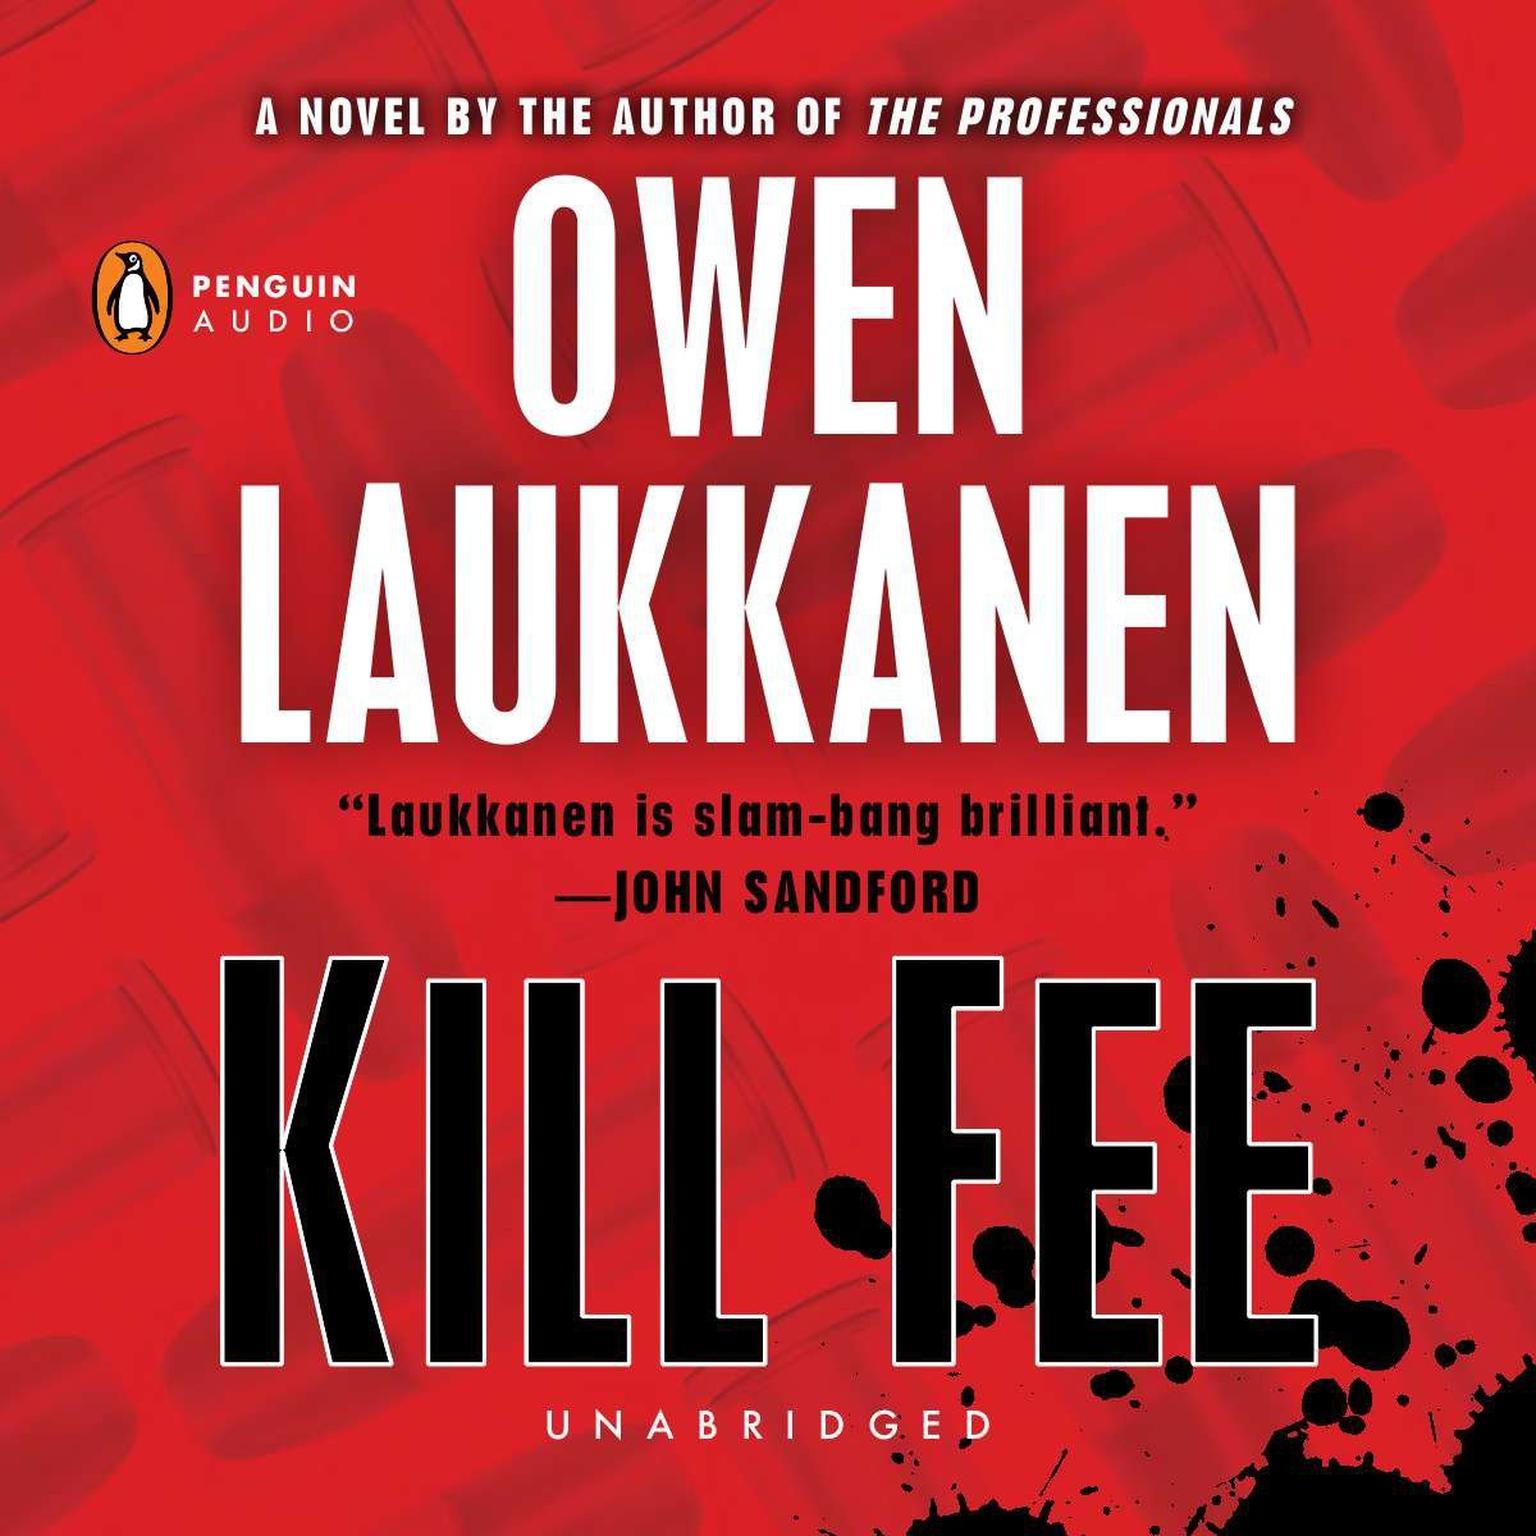 Kill Fee Audiobook, by Owen Laukkanen